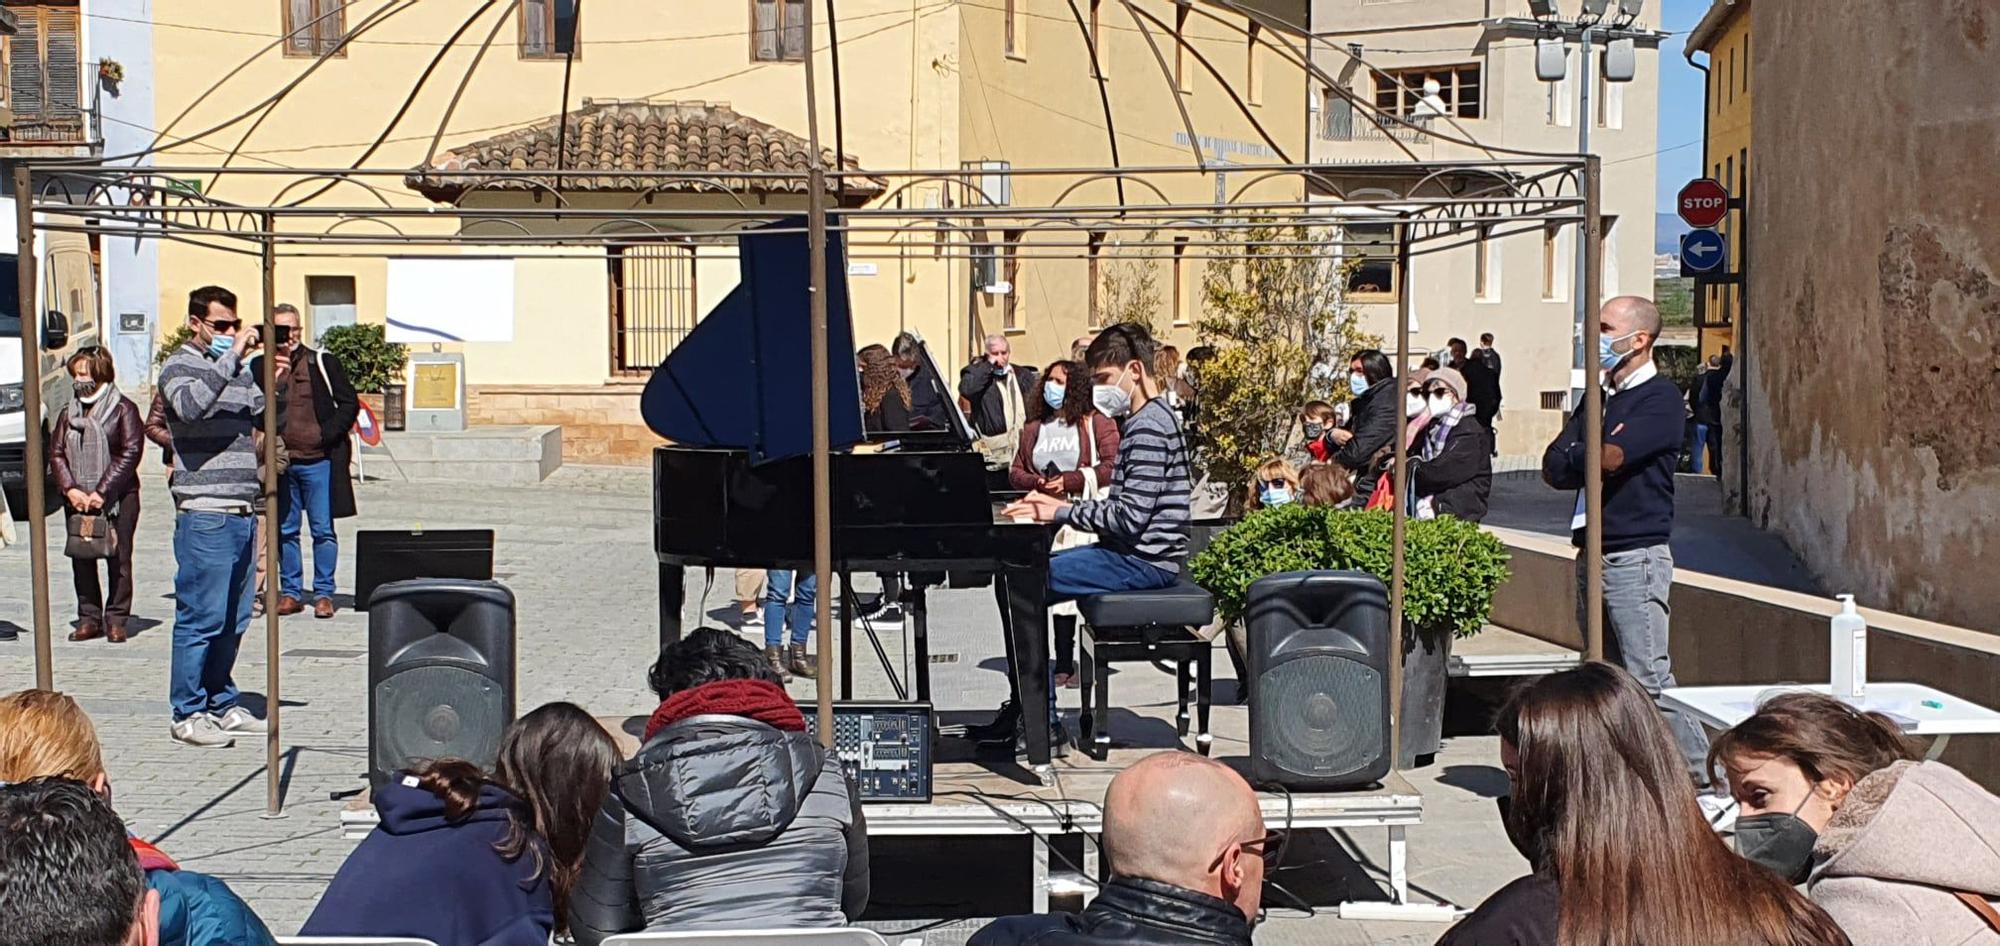 El Pianofest inunda de música el Castell de Riba-roja